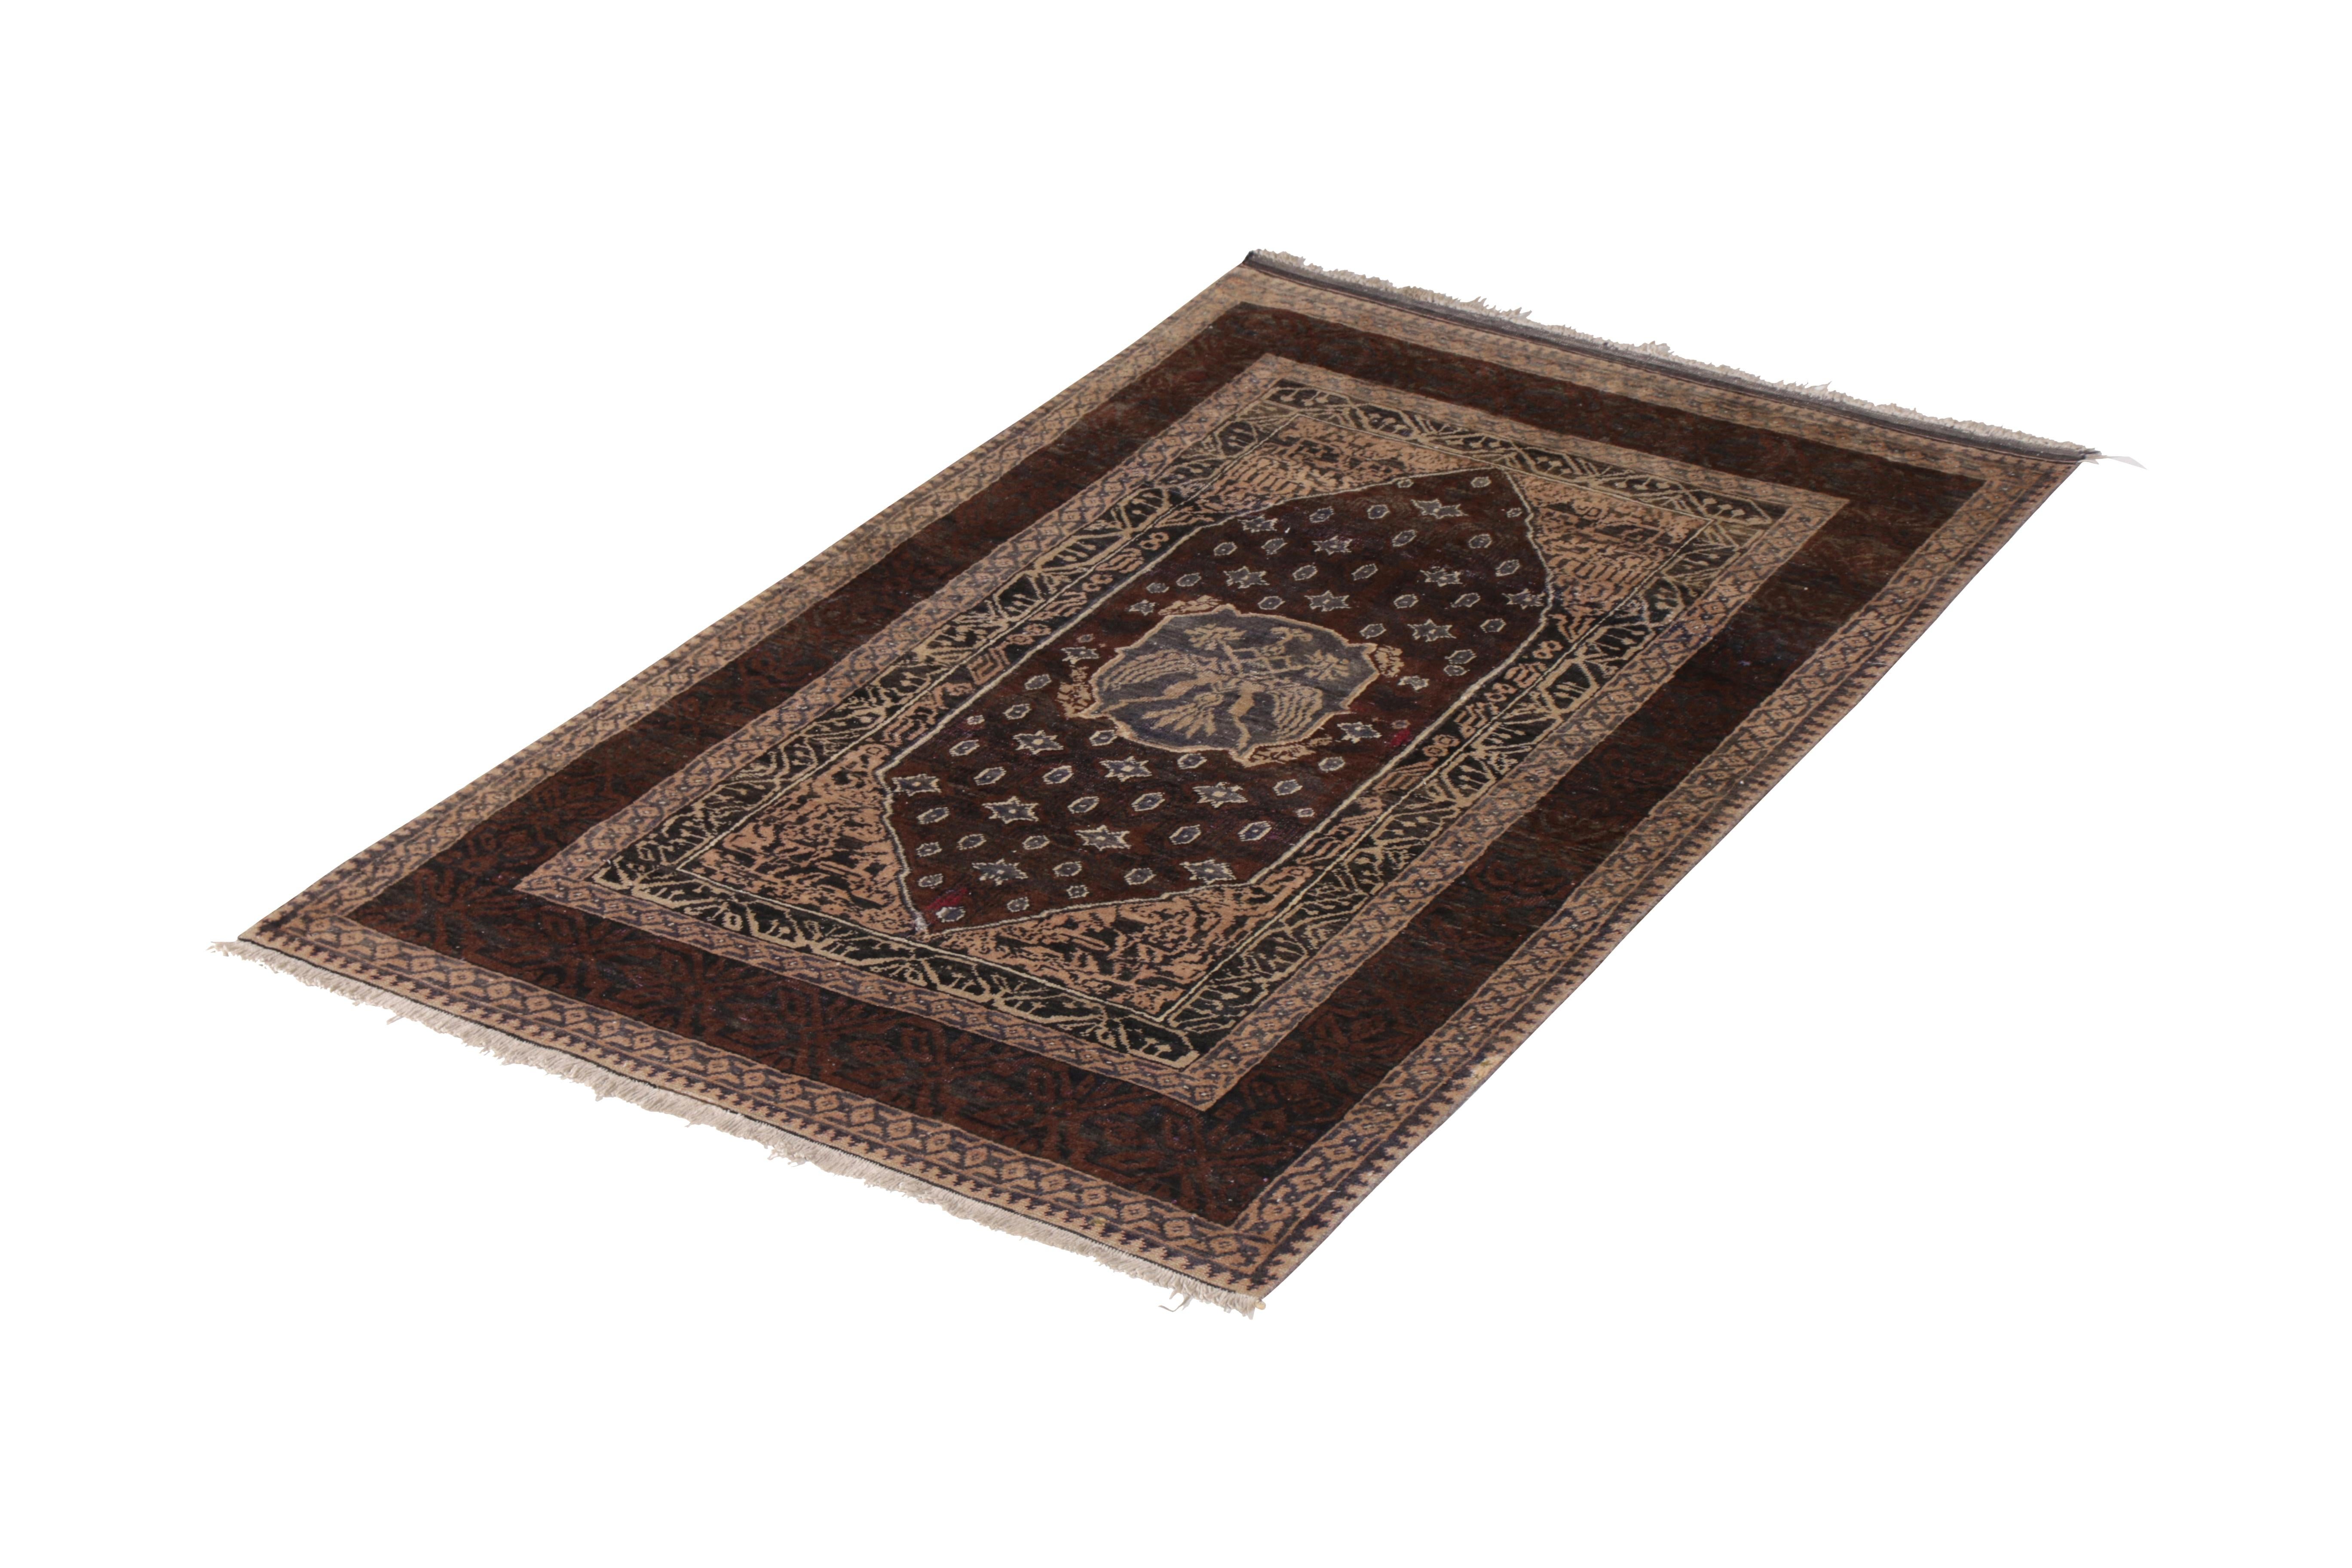 Noué à la main en laine et originaire d'Inde vers 1890-1900, ce tapis ancien évoque un tapis d'Agra de la fin du XIXe siècle, avec une subtile rareté de couleur. Il présente un accent bleu de bon goût dans le motif du médaillon et une géométrie